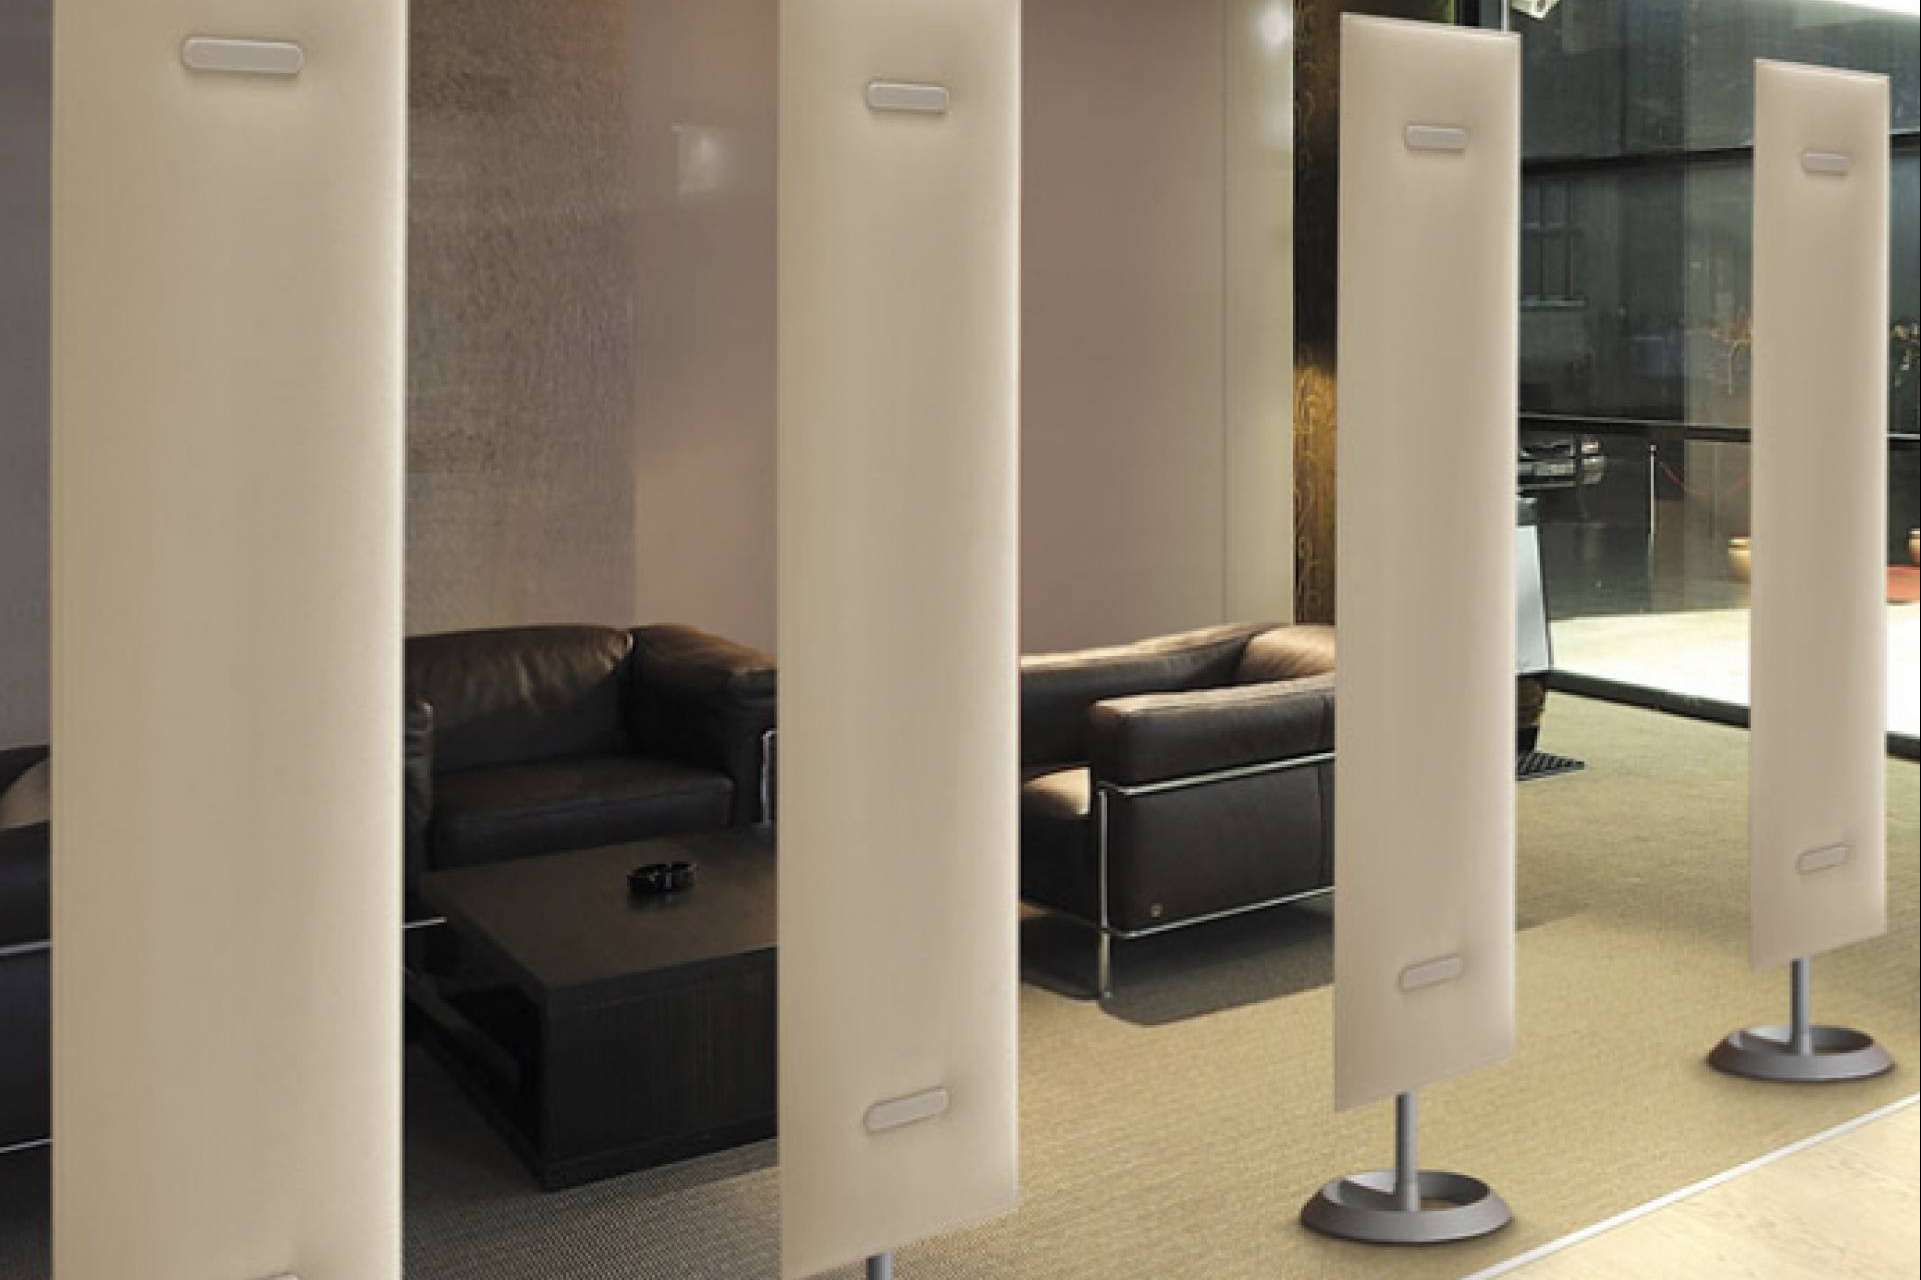 La necesidad de trabajar en oficinas sin ruido se puede solventar con paneles acústicos, por Office Deco